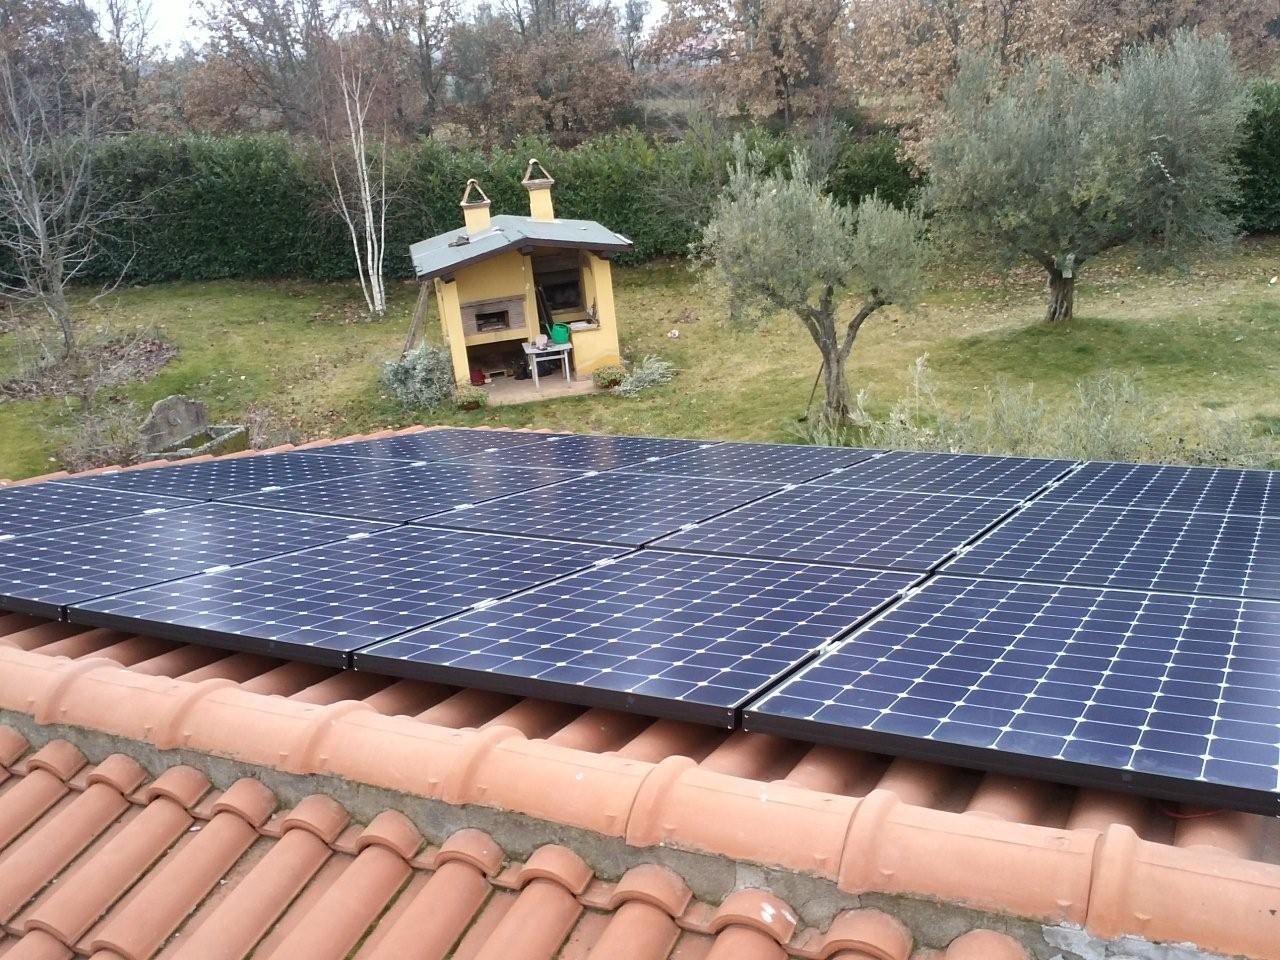 Impianti Fotovoltaici Roma. Preventivi, progettazione e installazione impianti fotovoltaici nel Lazio